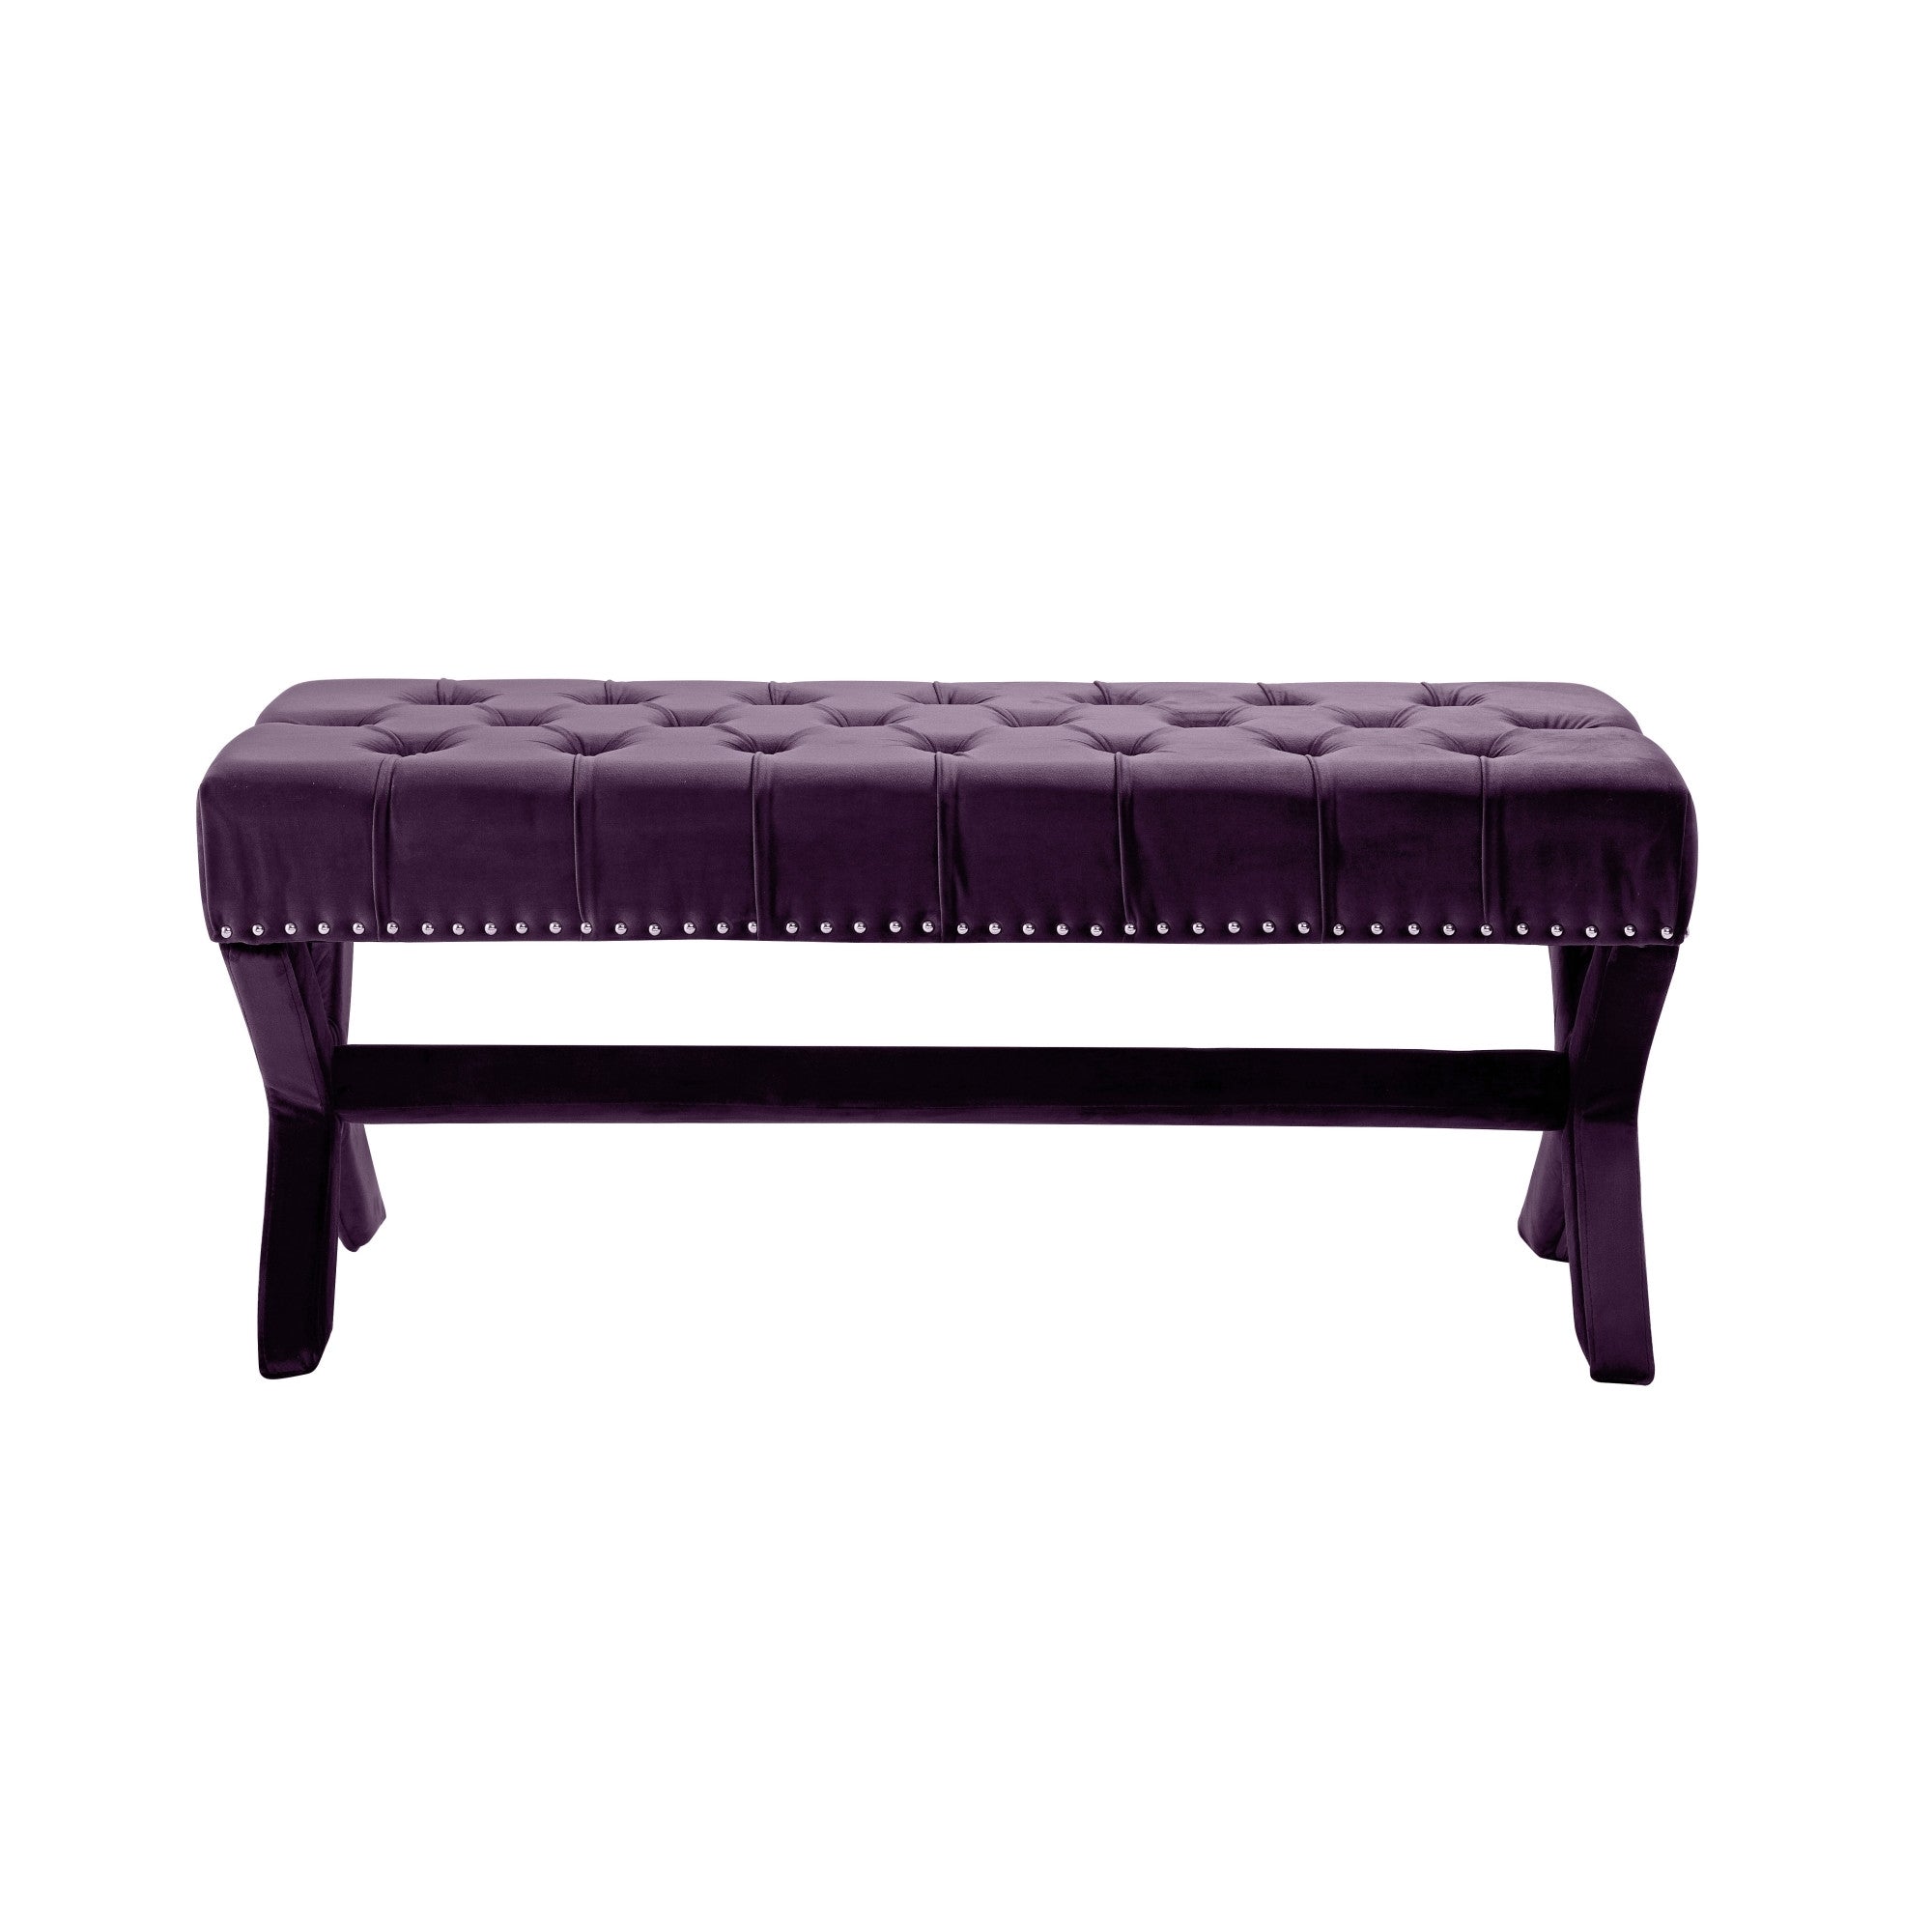 45" Cream Upholstered Linen Bench